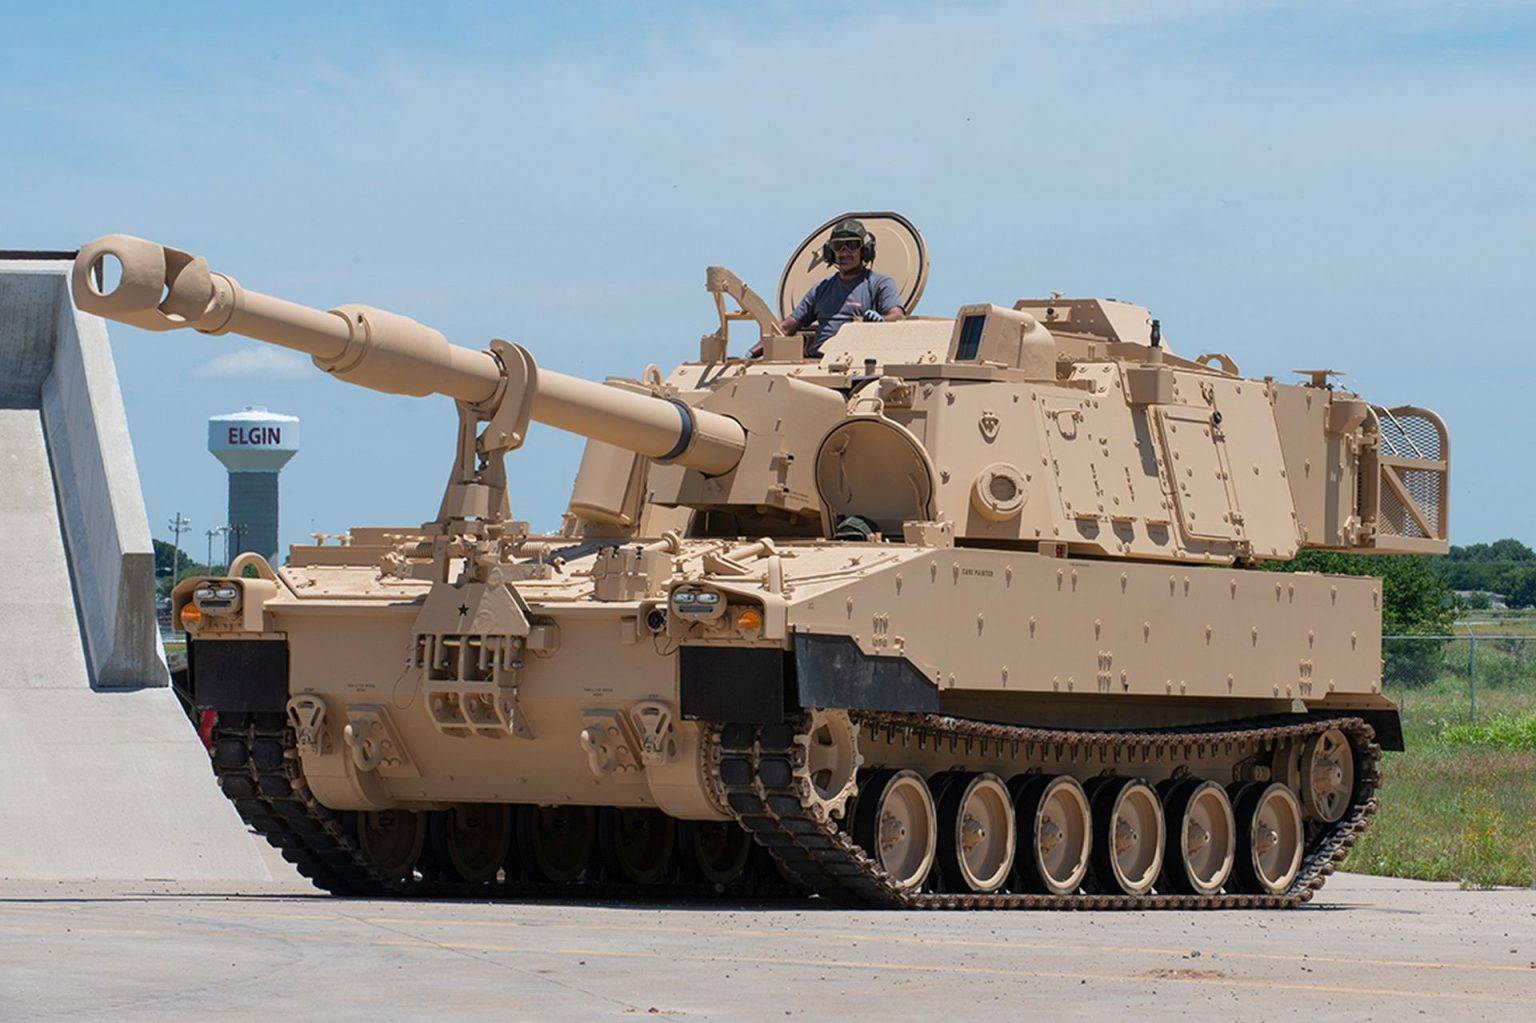 Армия: артиллерия: состояние и перспективы развития 155-мм боеприпасов полевой артиллерии за рубежом